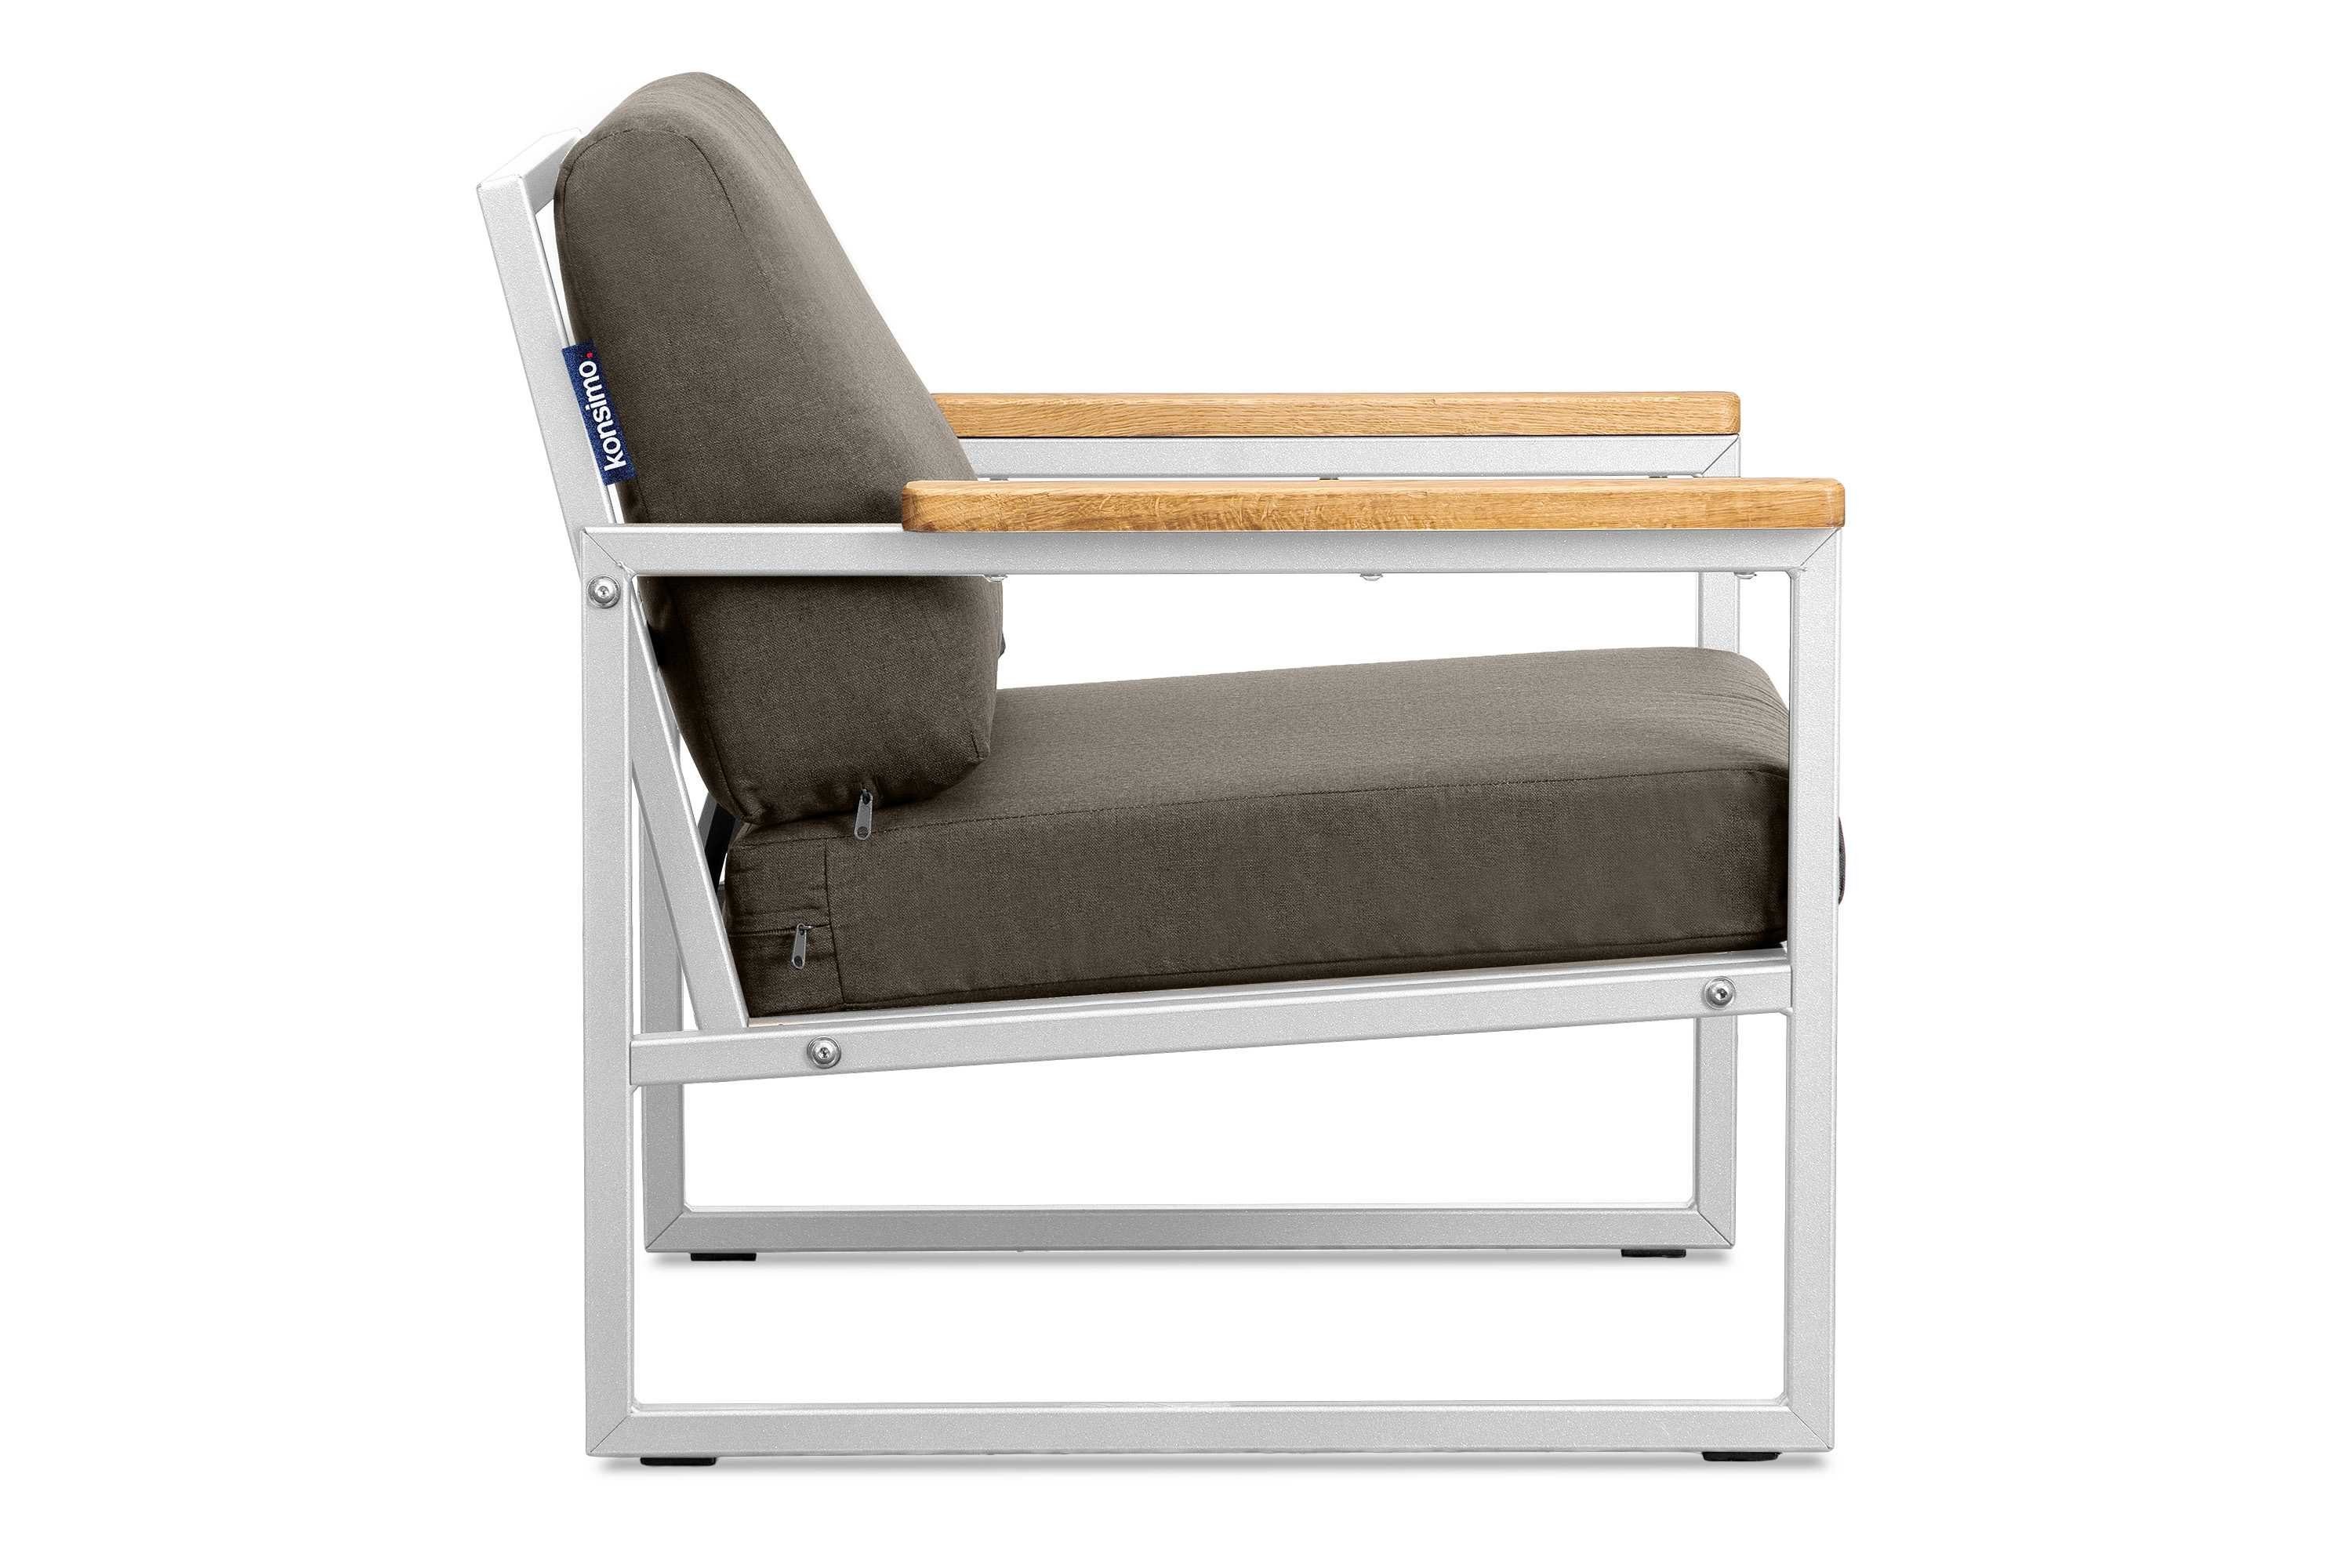 Konsimo Gartensessel TRIBO aus Sessel), weiß/beige Europe in Gartensessel UV-Beständigkeit, geölter wasserabweisend, (1x Eiche, Handläufe schmutz- und Made